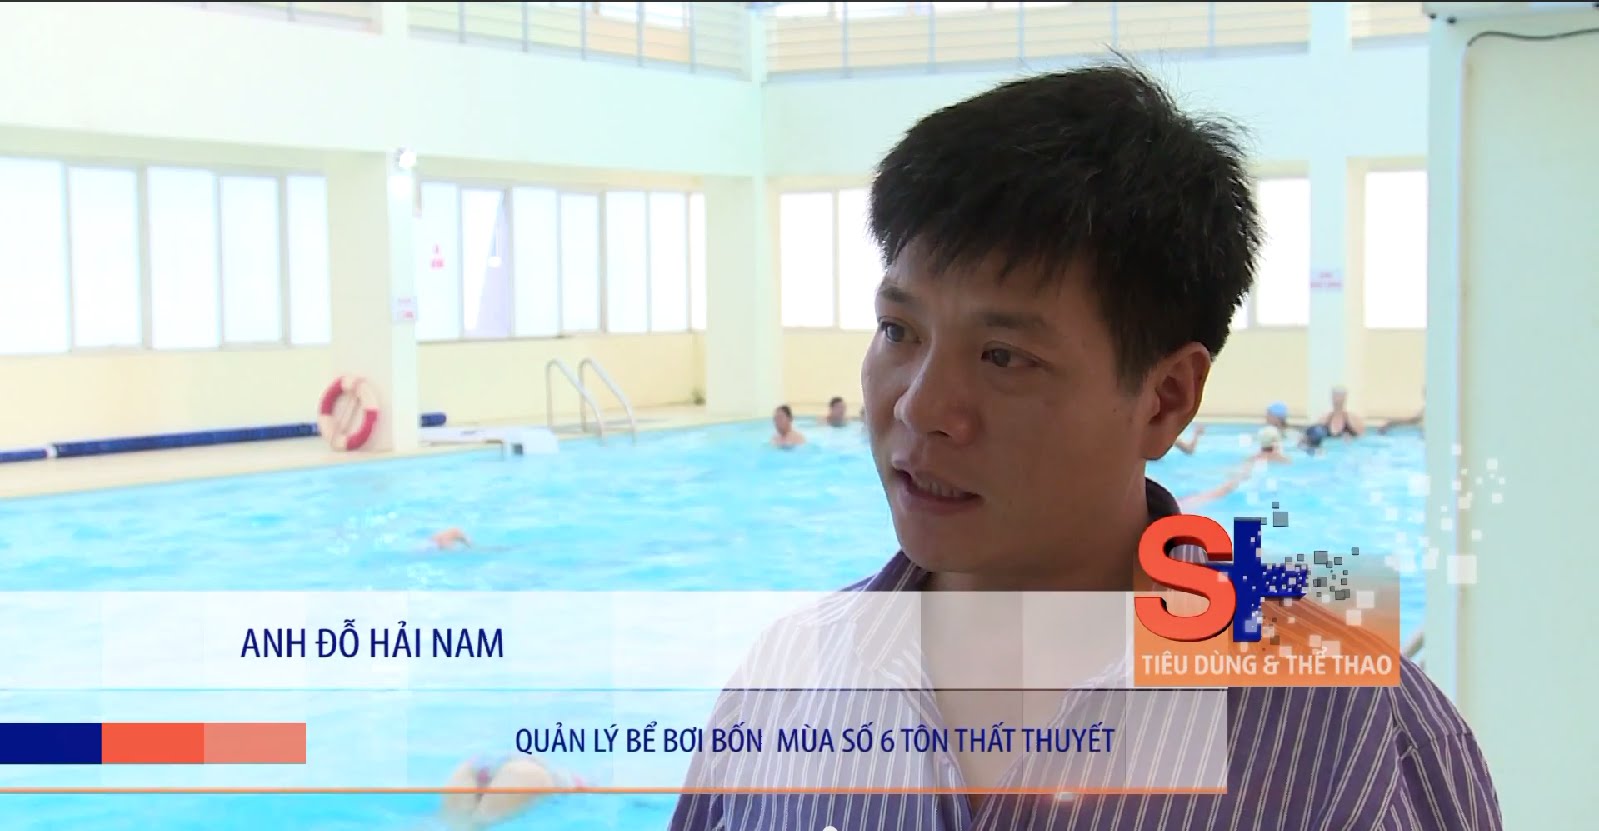 Anh. Đỗ Hải Nam-( Quản lý bể bơi 4 mùa) cho biết chi phí hoạt động bể bơi 